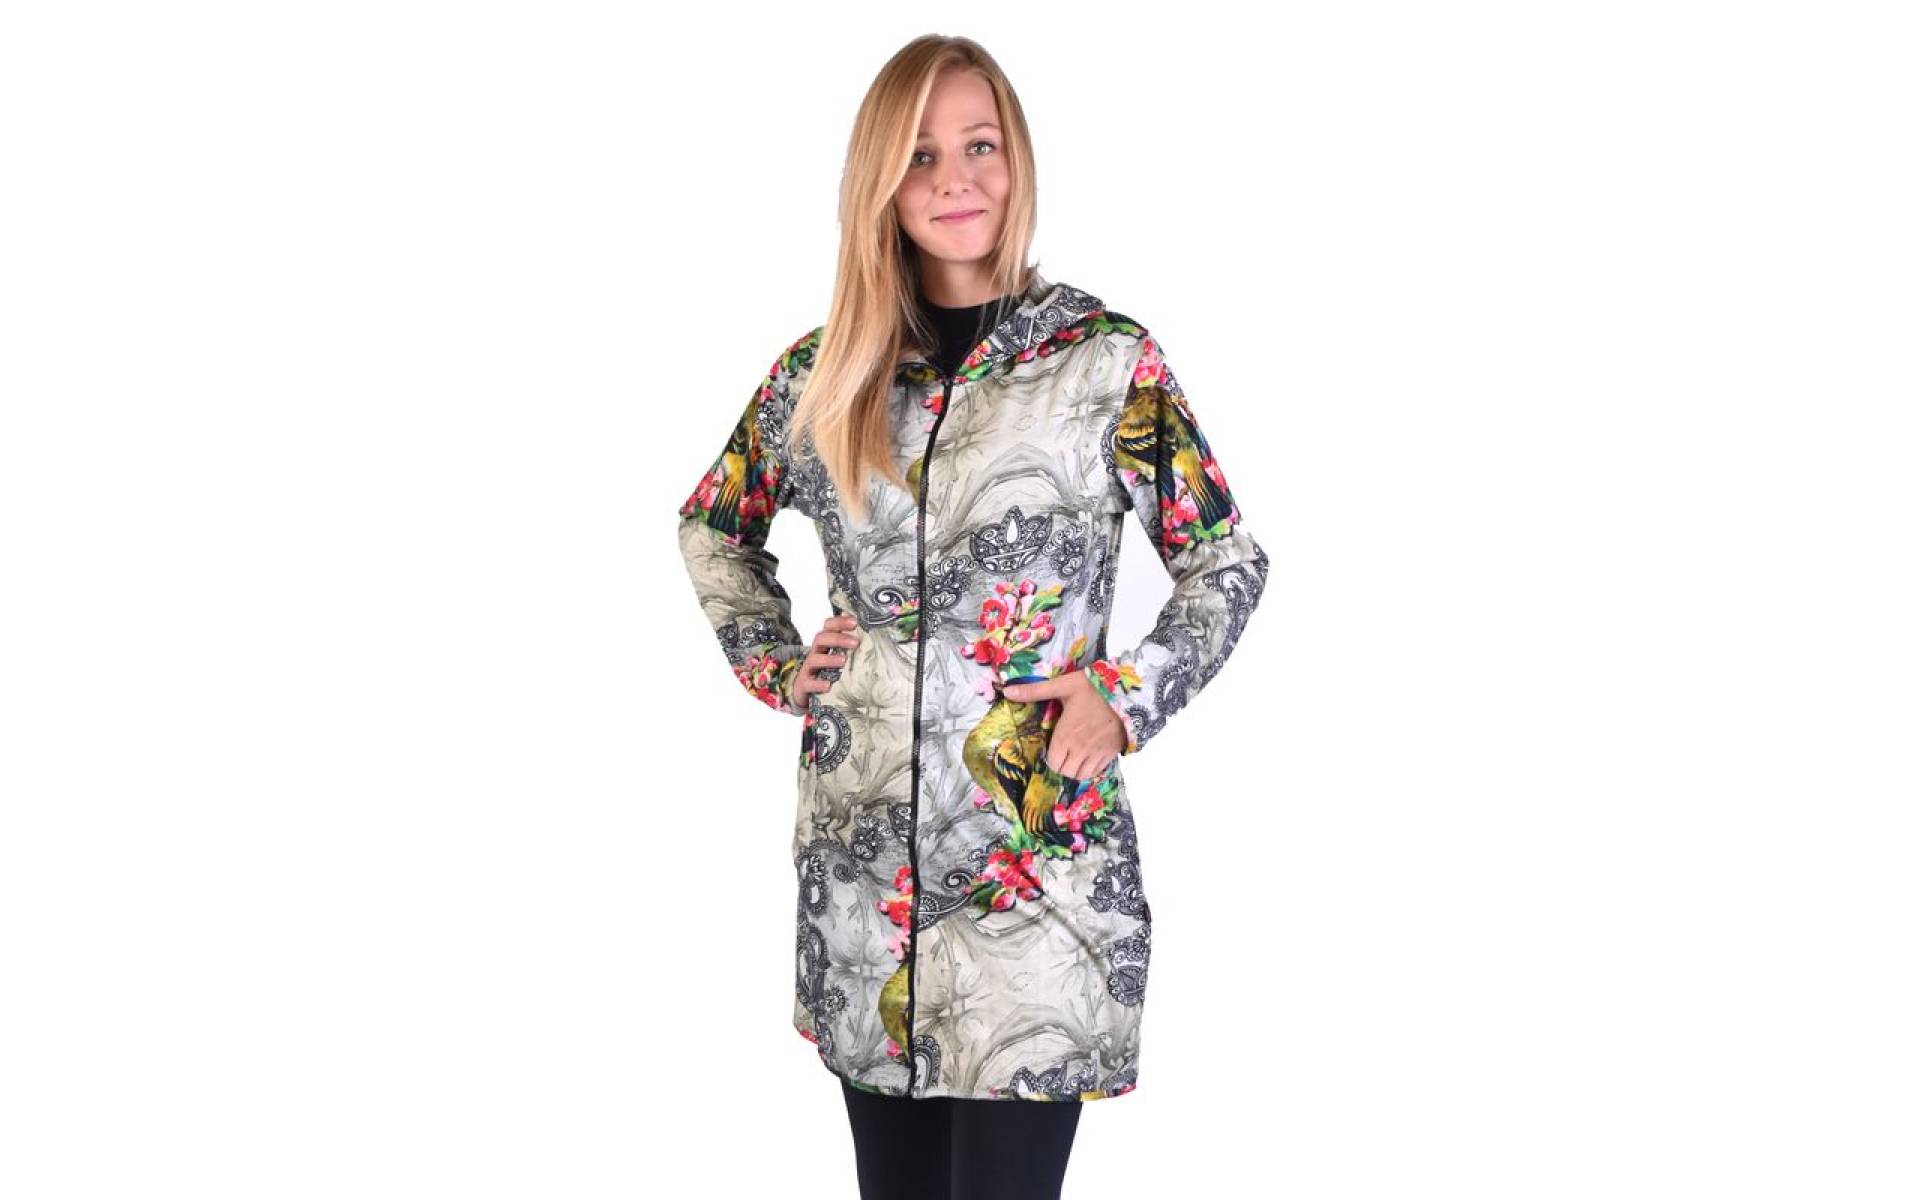 Kabát s kapucňou, zapínaný na zips, potlač papagájov a kvetov